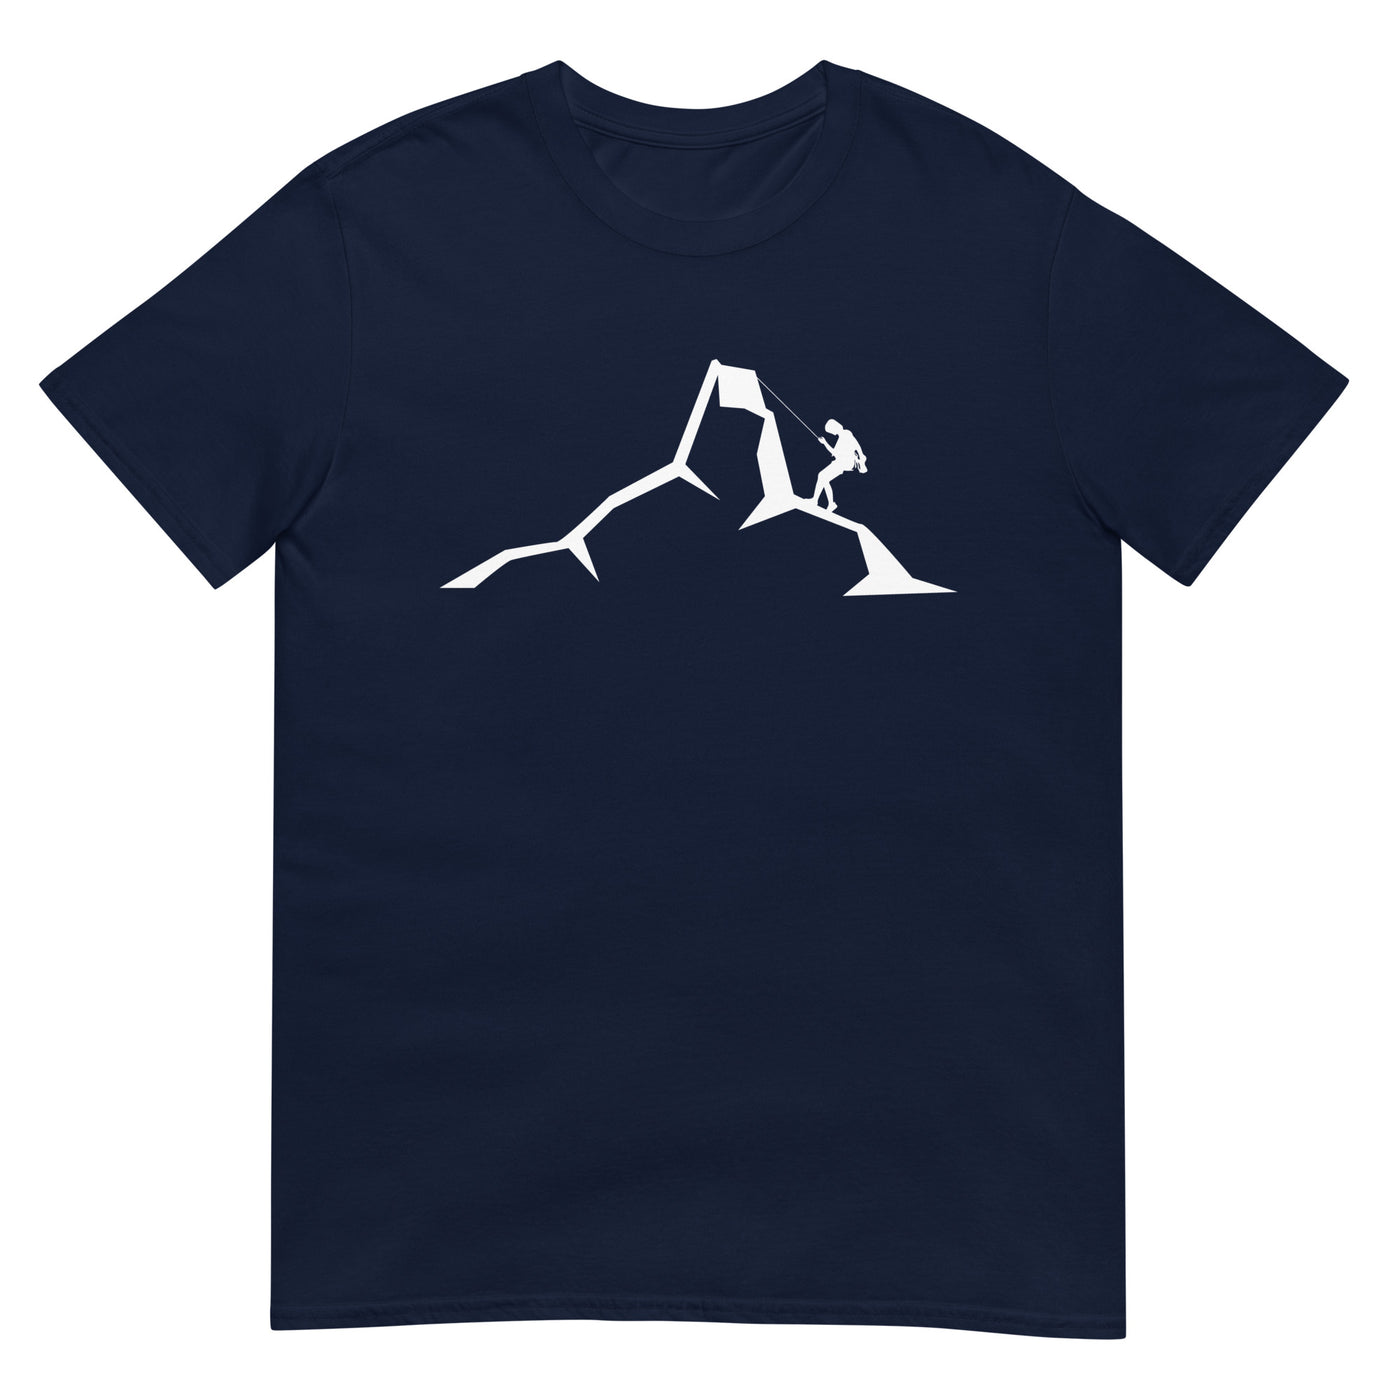 Berge - Klettern - T-Shirt (Unisex) klettern xxx yyy zzz Navy